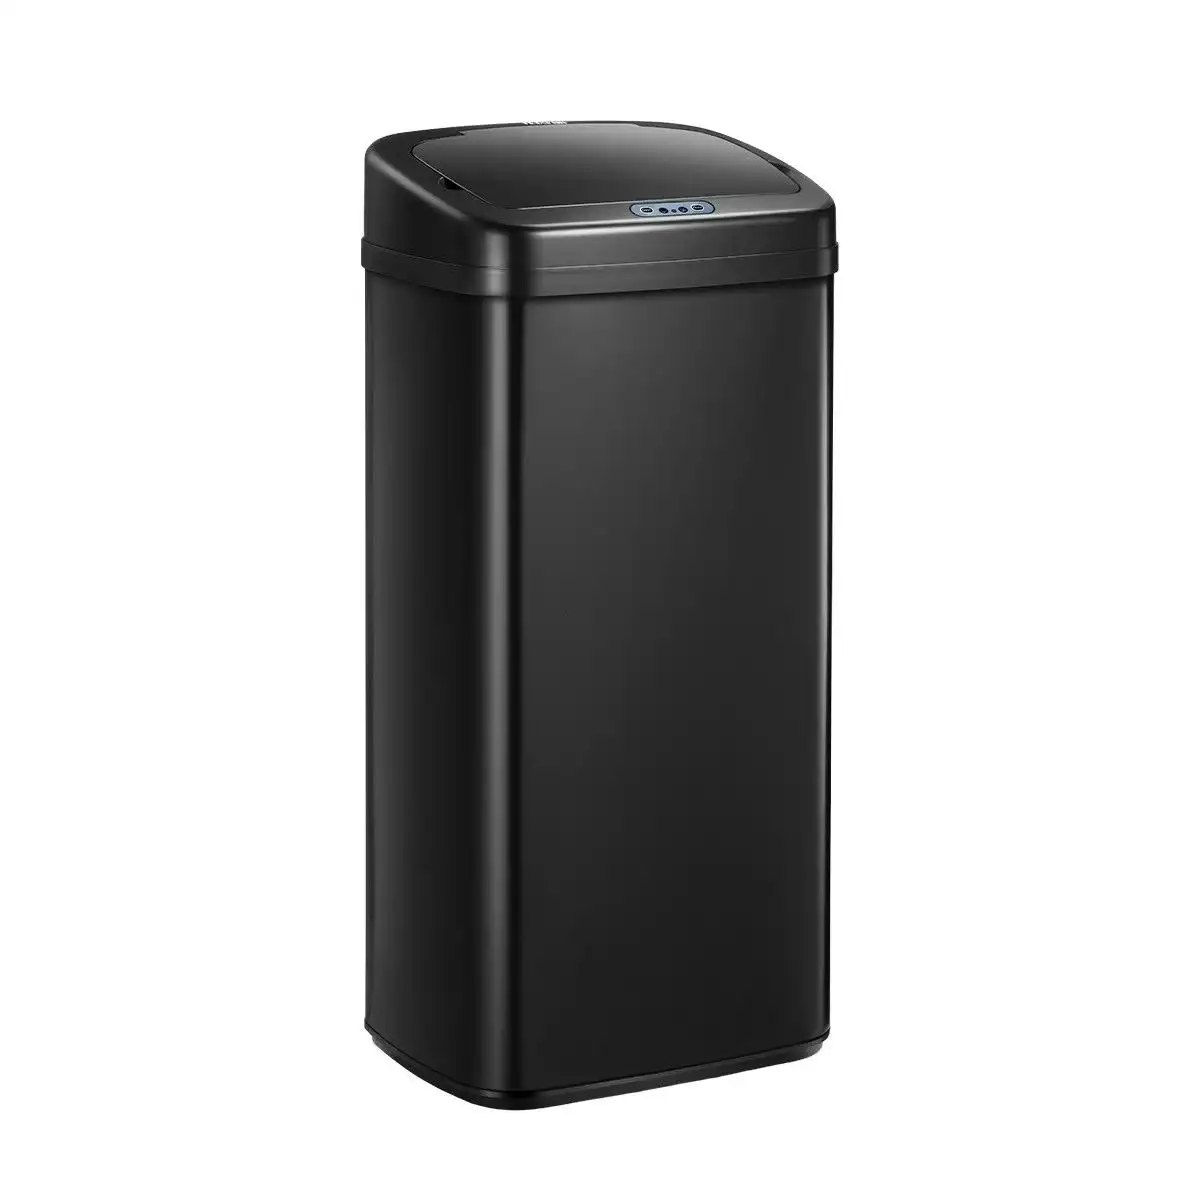 Ausway 40L Sensor Bin Auto Rubbish Bin Recycle Trash Can Touch-free Kitchen Garbage Bin